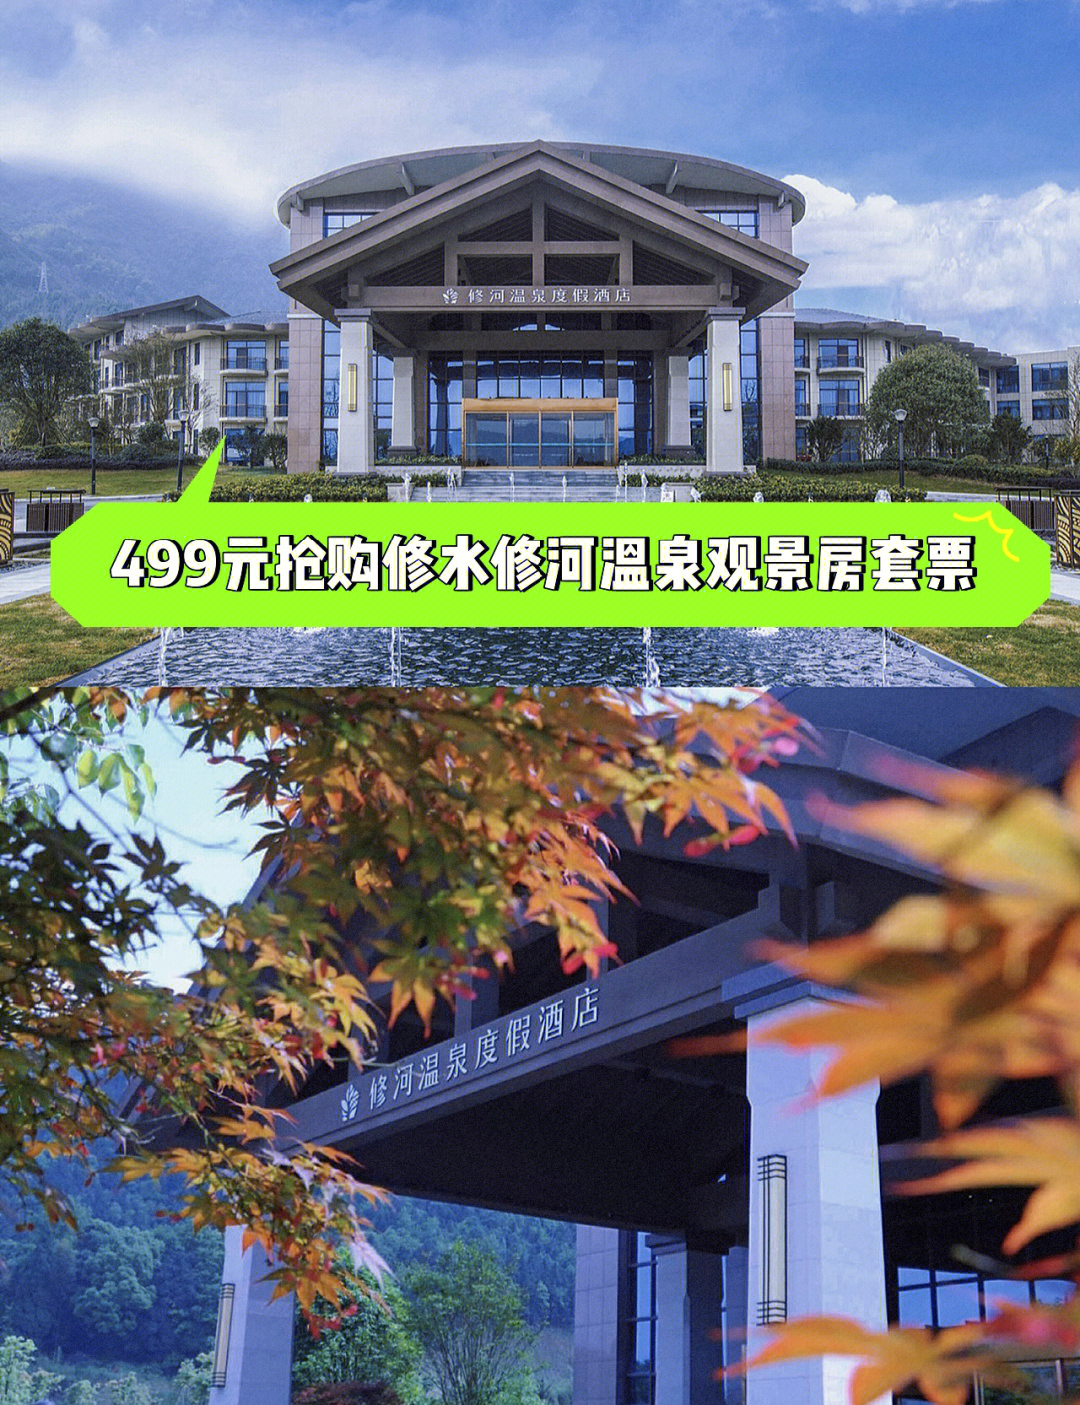 江西修河温泉度假酒店座落于风景秀丽,气候宜人的江西省九江市修水县